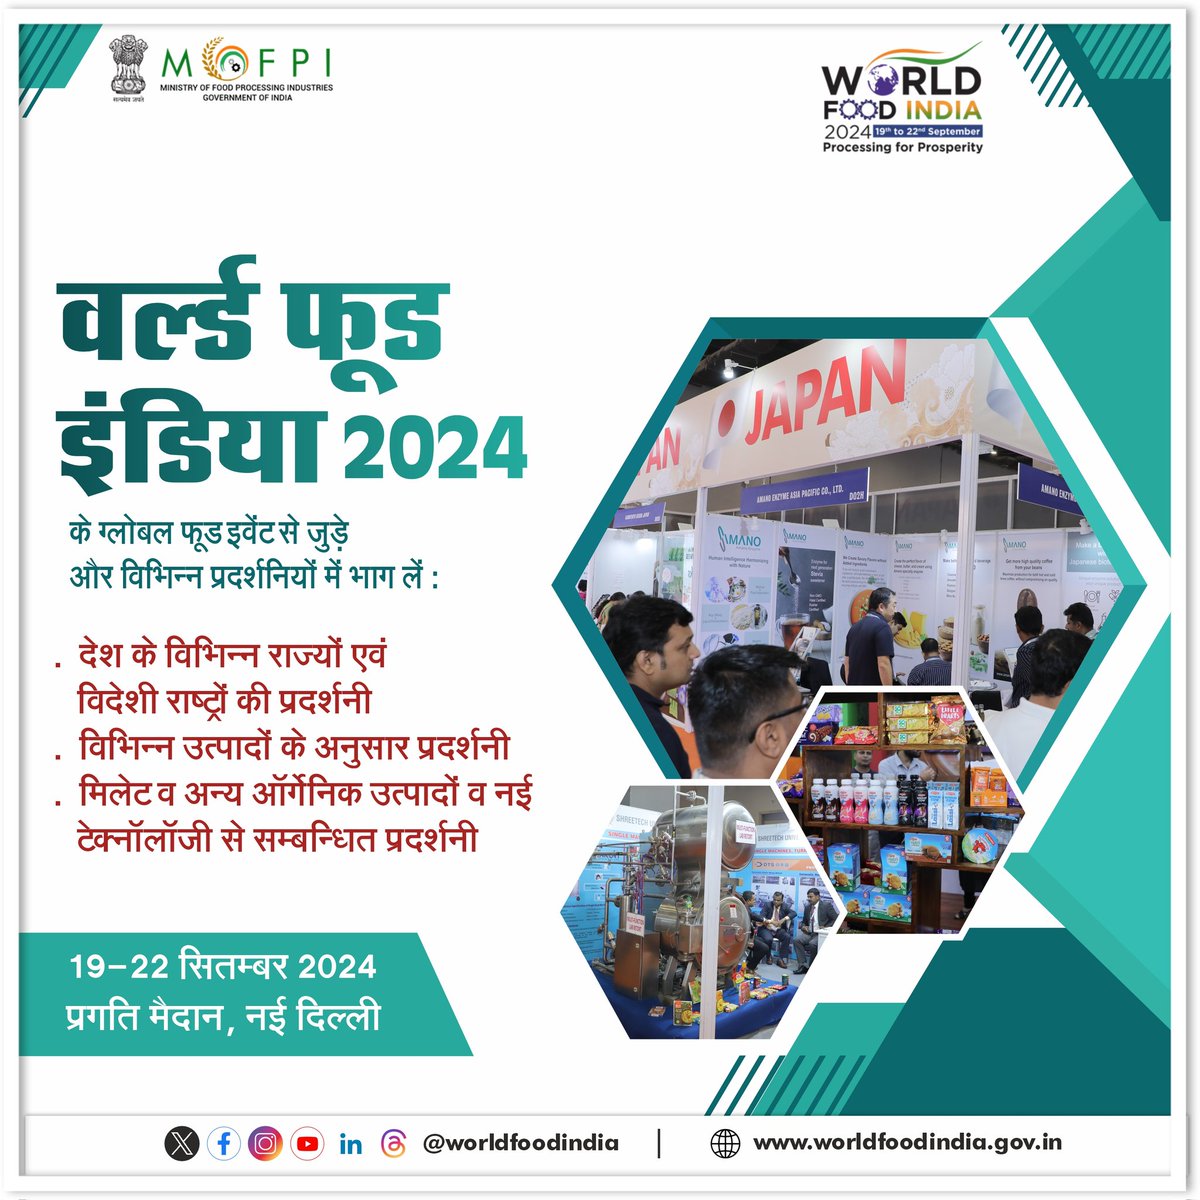 दुनिया को भारतीय खाद्य संस्कृति से परिचित कराने के साथ-साथ खाद्य प्रसंस्करण क्षेत्र में निवेश को बढ़ावा देने के उद्देश्य से @MOFPI_GOI इस 19-22 सितंबर को भारत मंडपम् में #worldfoodindia2024 का आयोजन कर रहा है। अधिक जानकारी के लिए क्लिक करें : worldfoodindia.gov.in